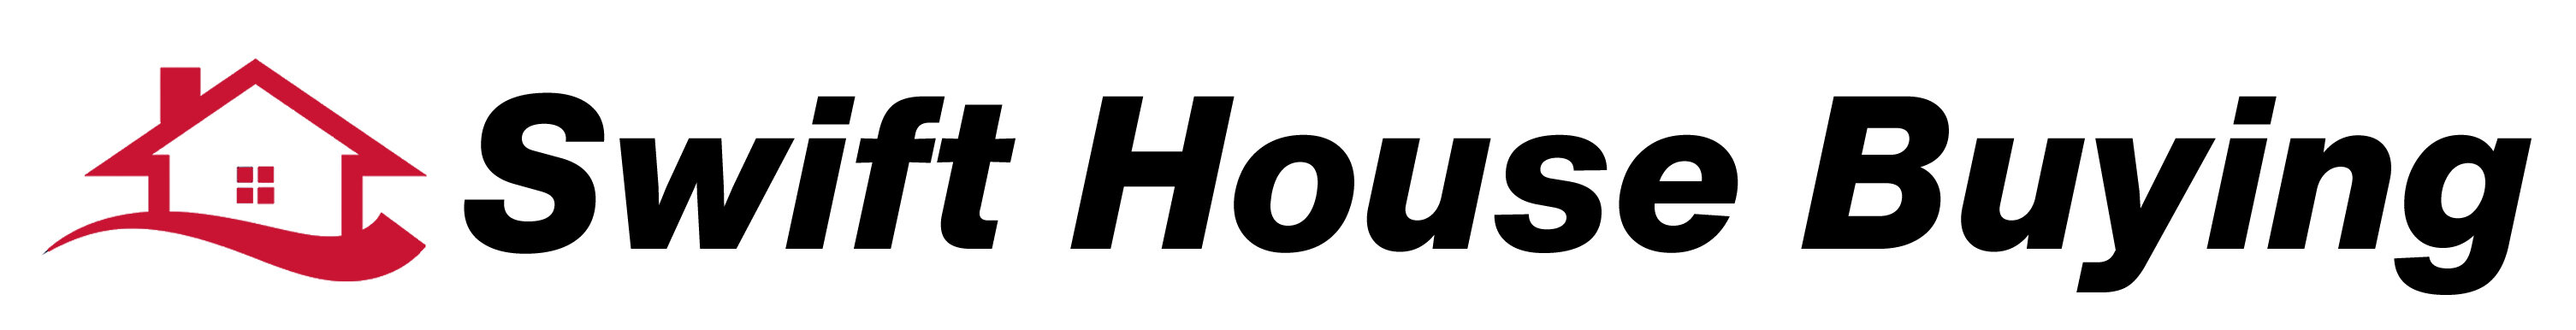 Swift House Buying logo